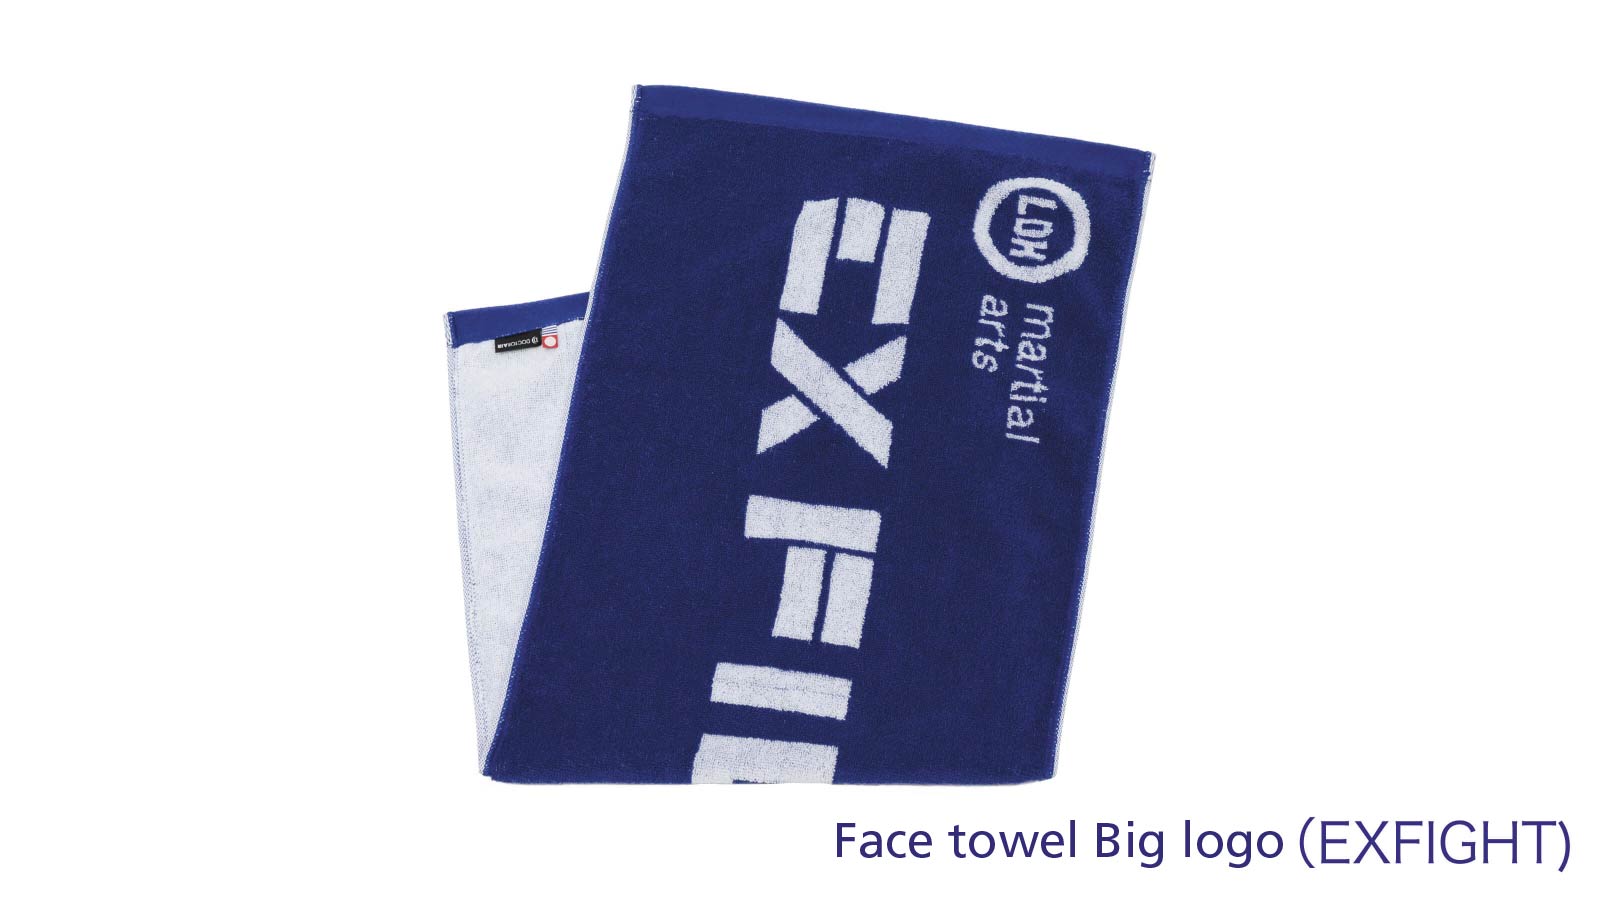 Face towel big logo